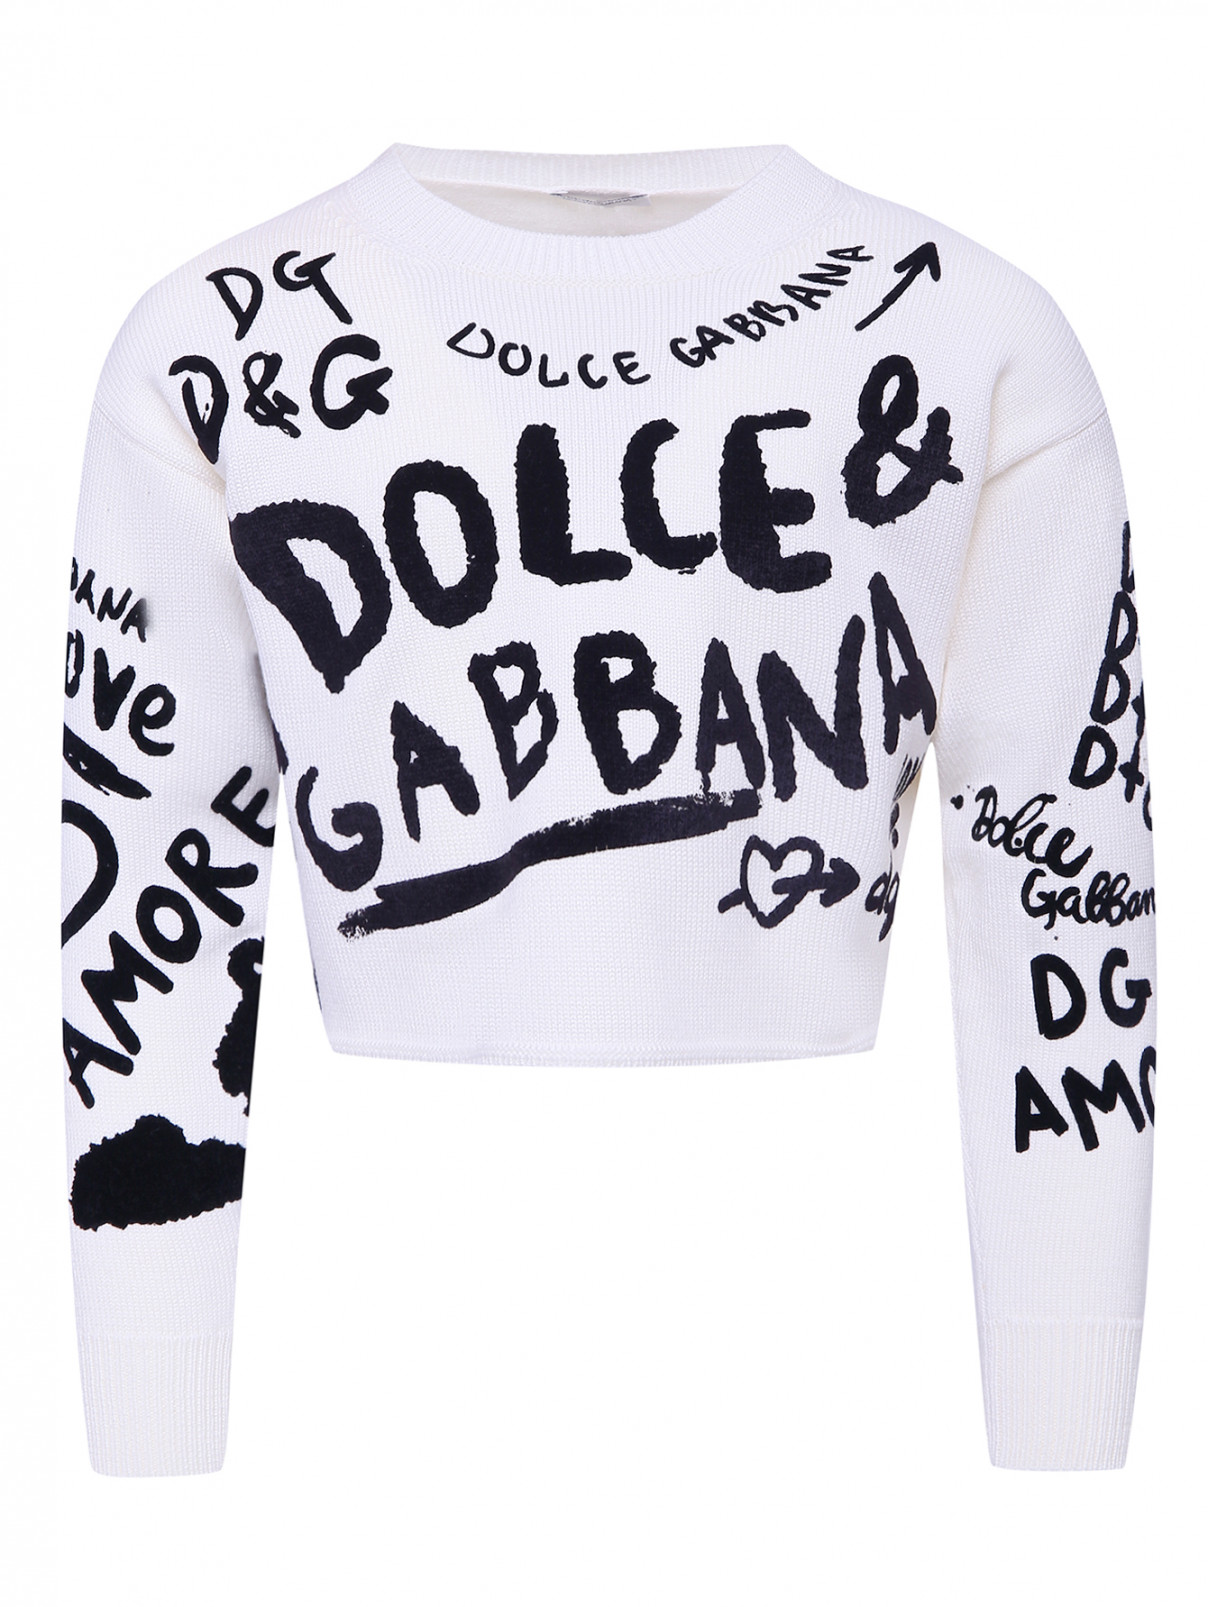 Шерстяной джемпер с фактурным принтом Dolce & Gabbana  –  Общий вид  – Цвет:  Белый